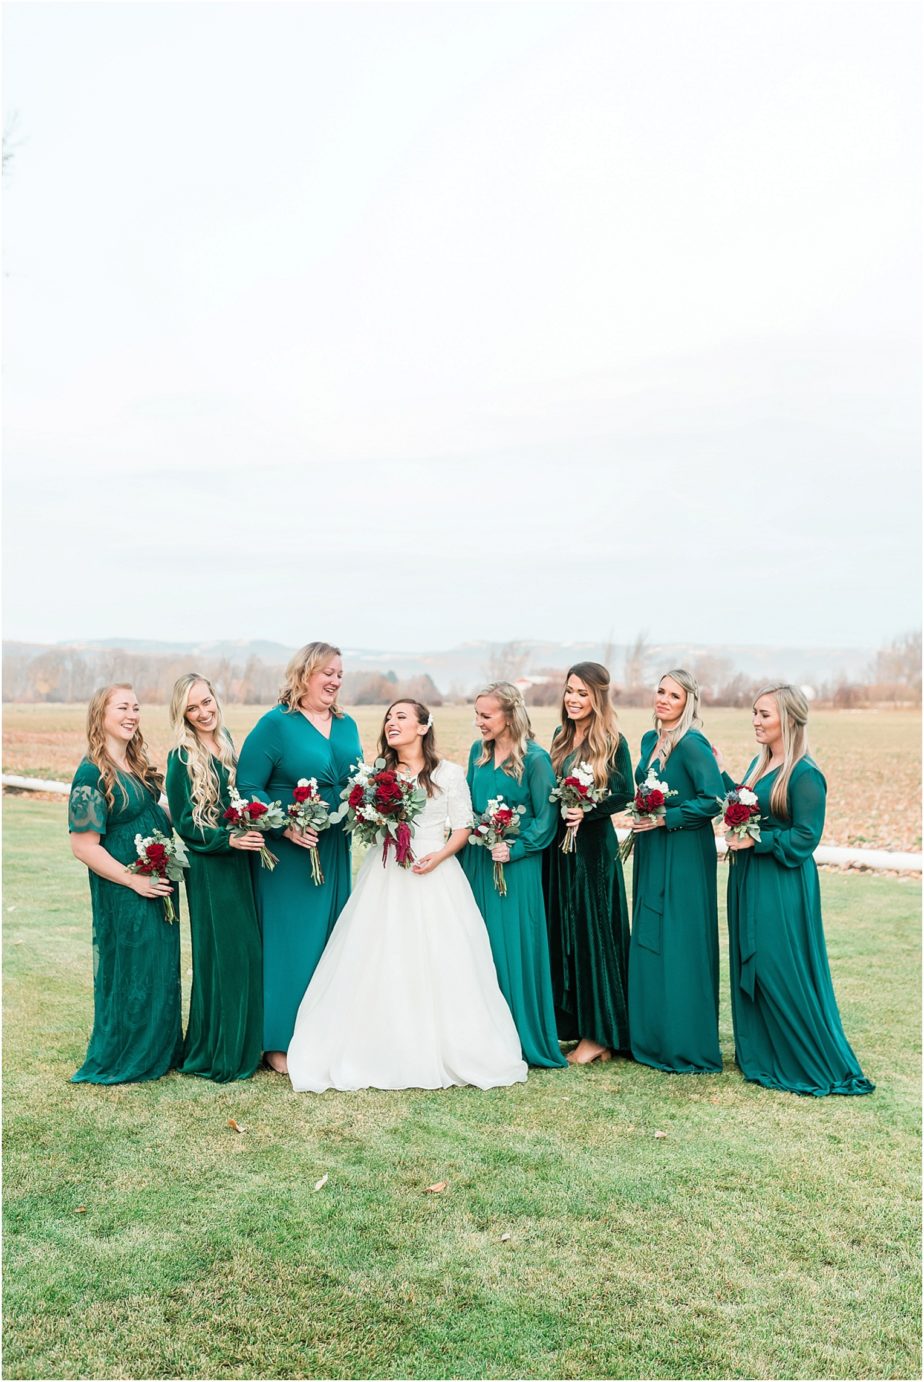 Ellensburg backyard wedding- bride with bridesmaids